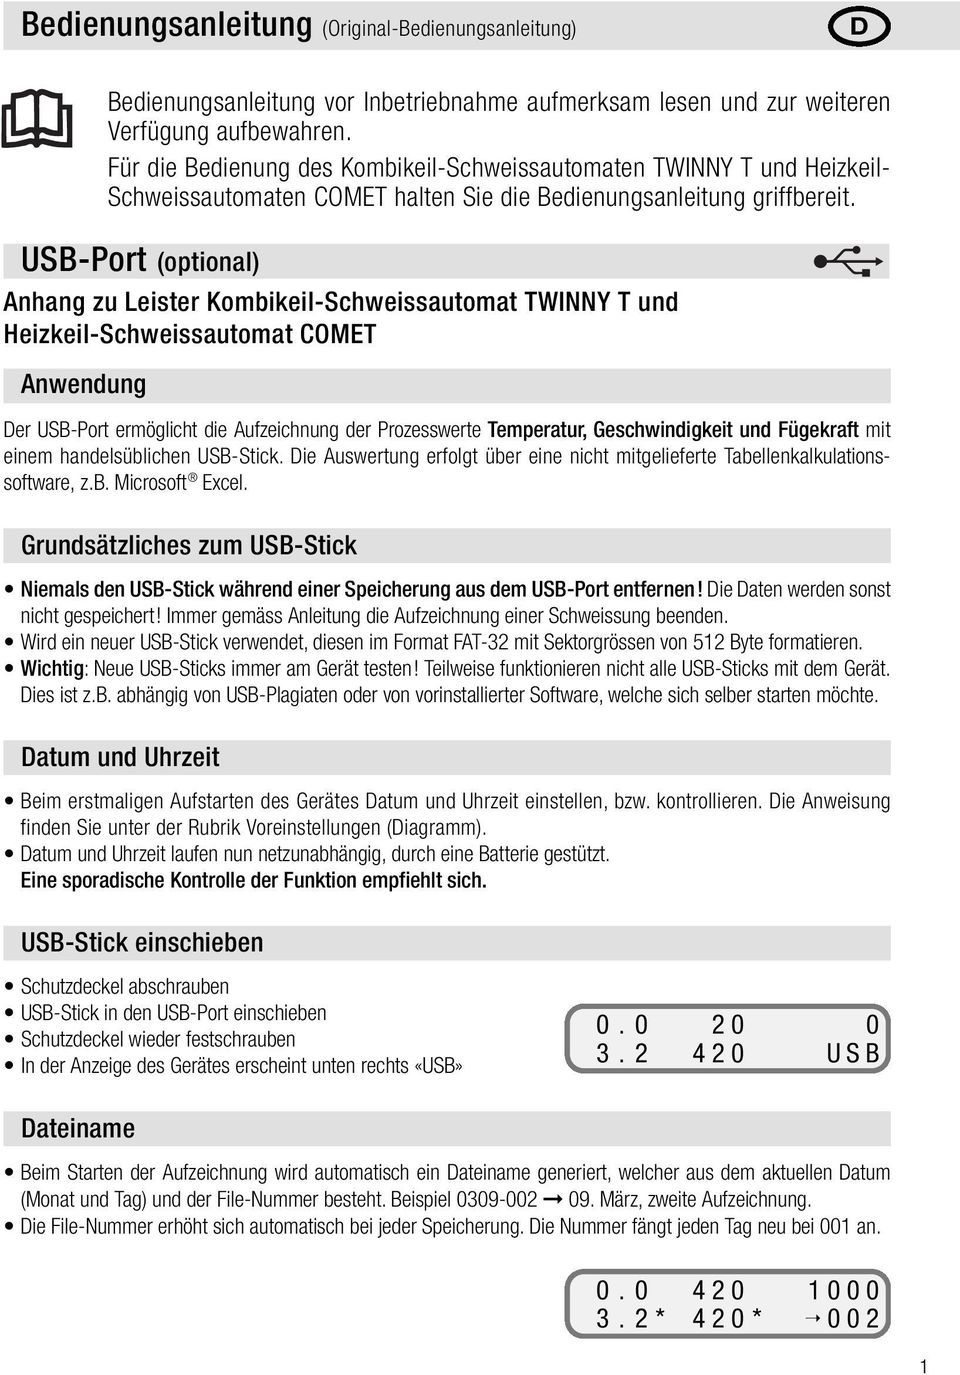 USB-Port (optional) Anhang zu Leister Kombikeil-Schweissautomat TWINNY T und eizkeil-schweissautomat COMET Der USB-Port ermöglicht die Aufzeichnung der Prozesswerte Temperatur, Geschwindigkeit und